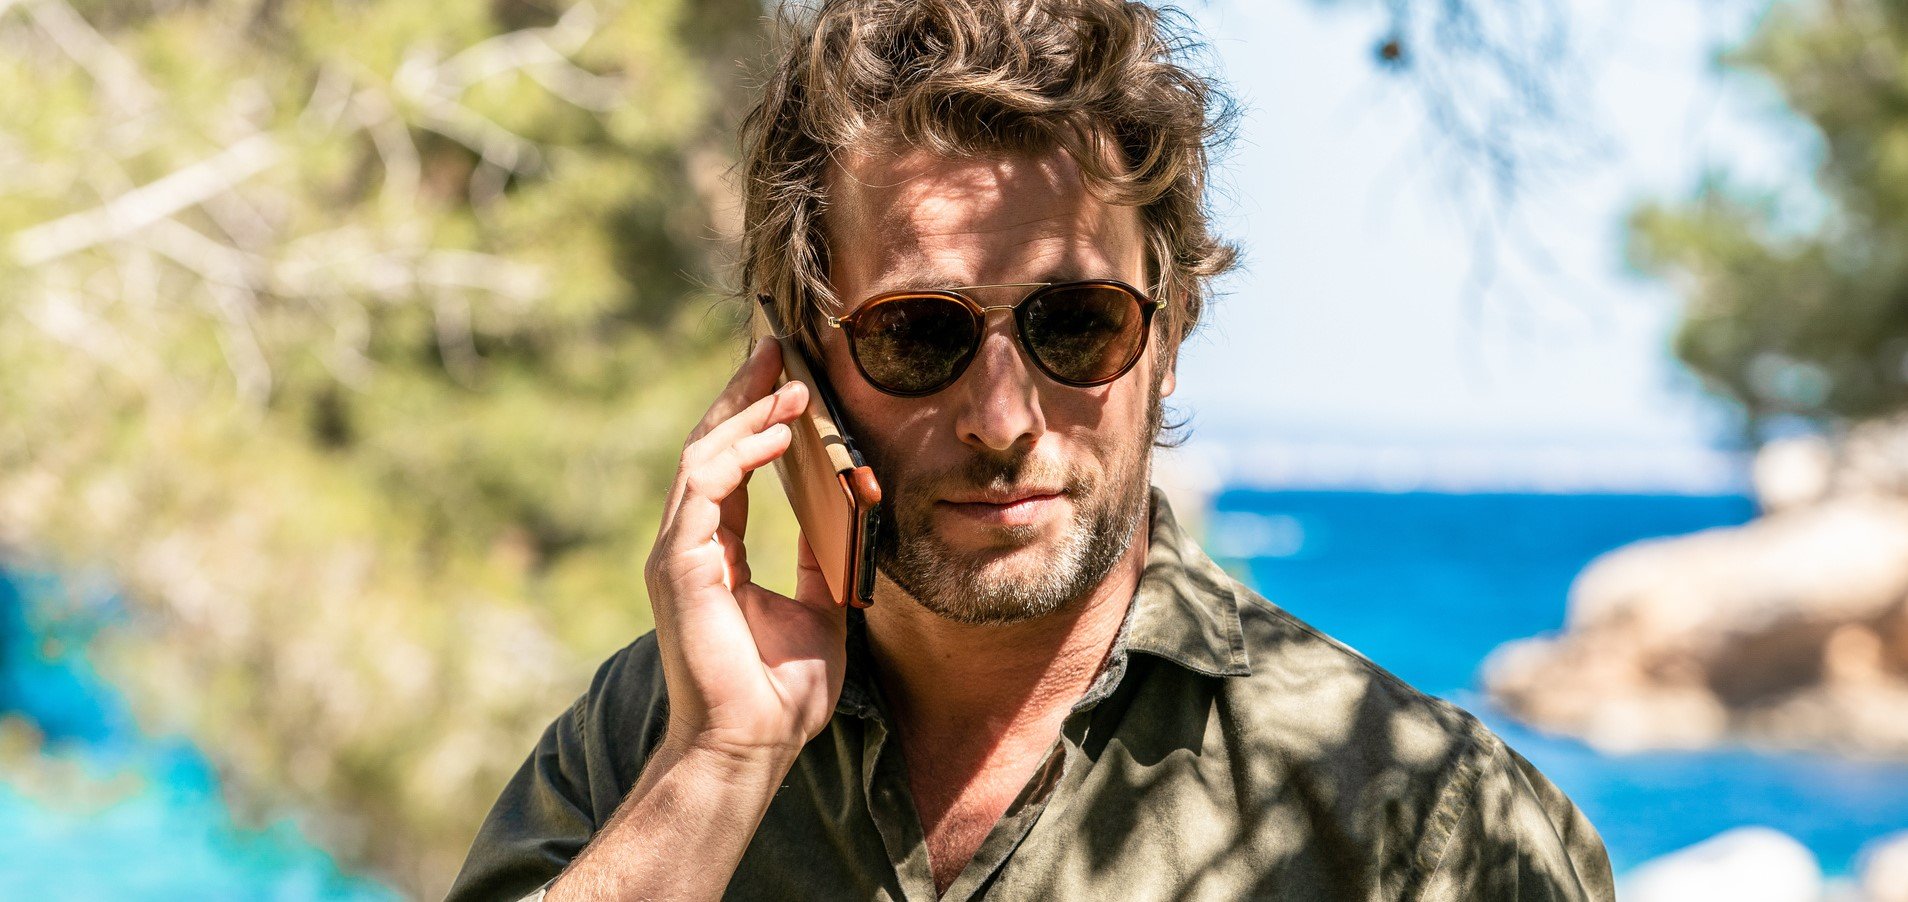 "The Mallorca Files - Die Ikone des Oligarchen": Max (Julian Looman) steht am Strand und telefoniert.